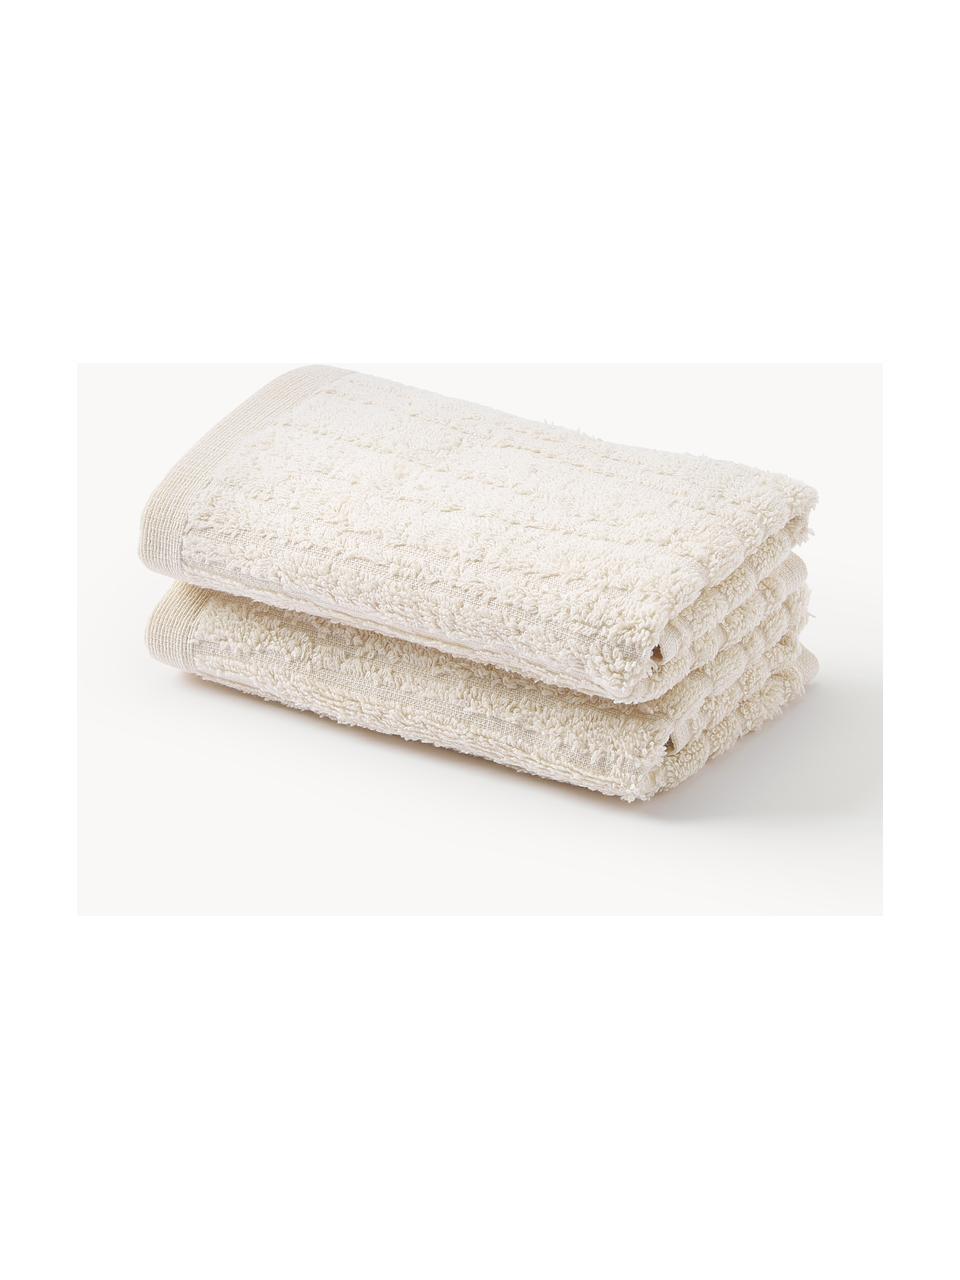 Baumwoll-Handtuch Audrina in verschiedenen Größen, Hellbeige, Handtuch, B 50 x L 100 cm, 2 Stück